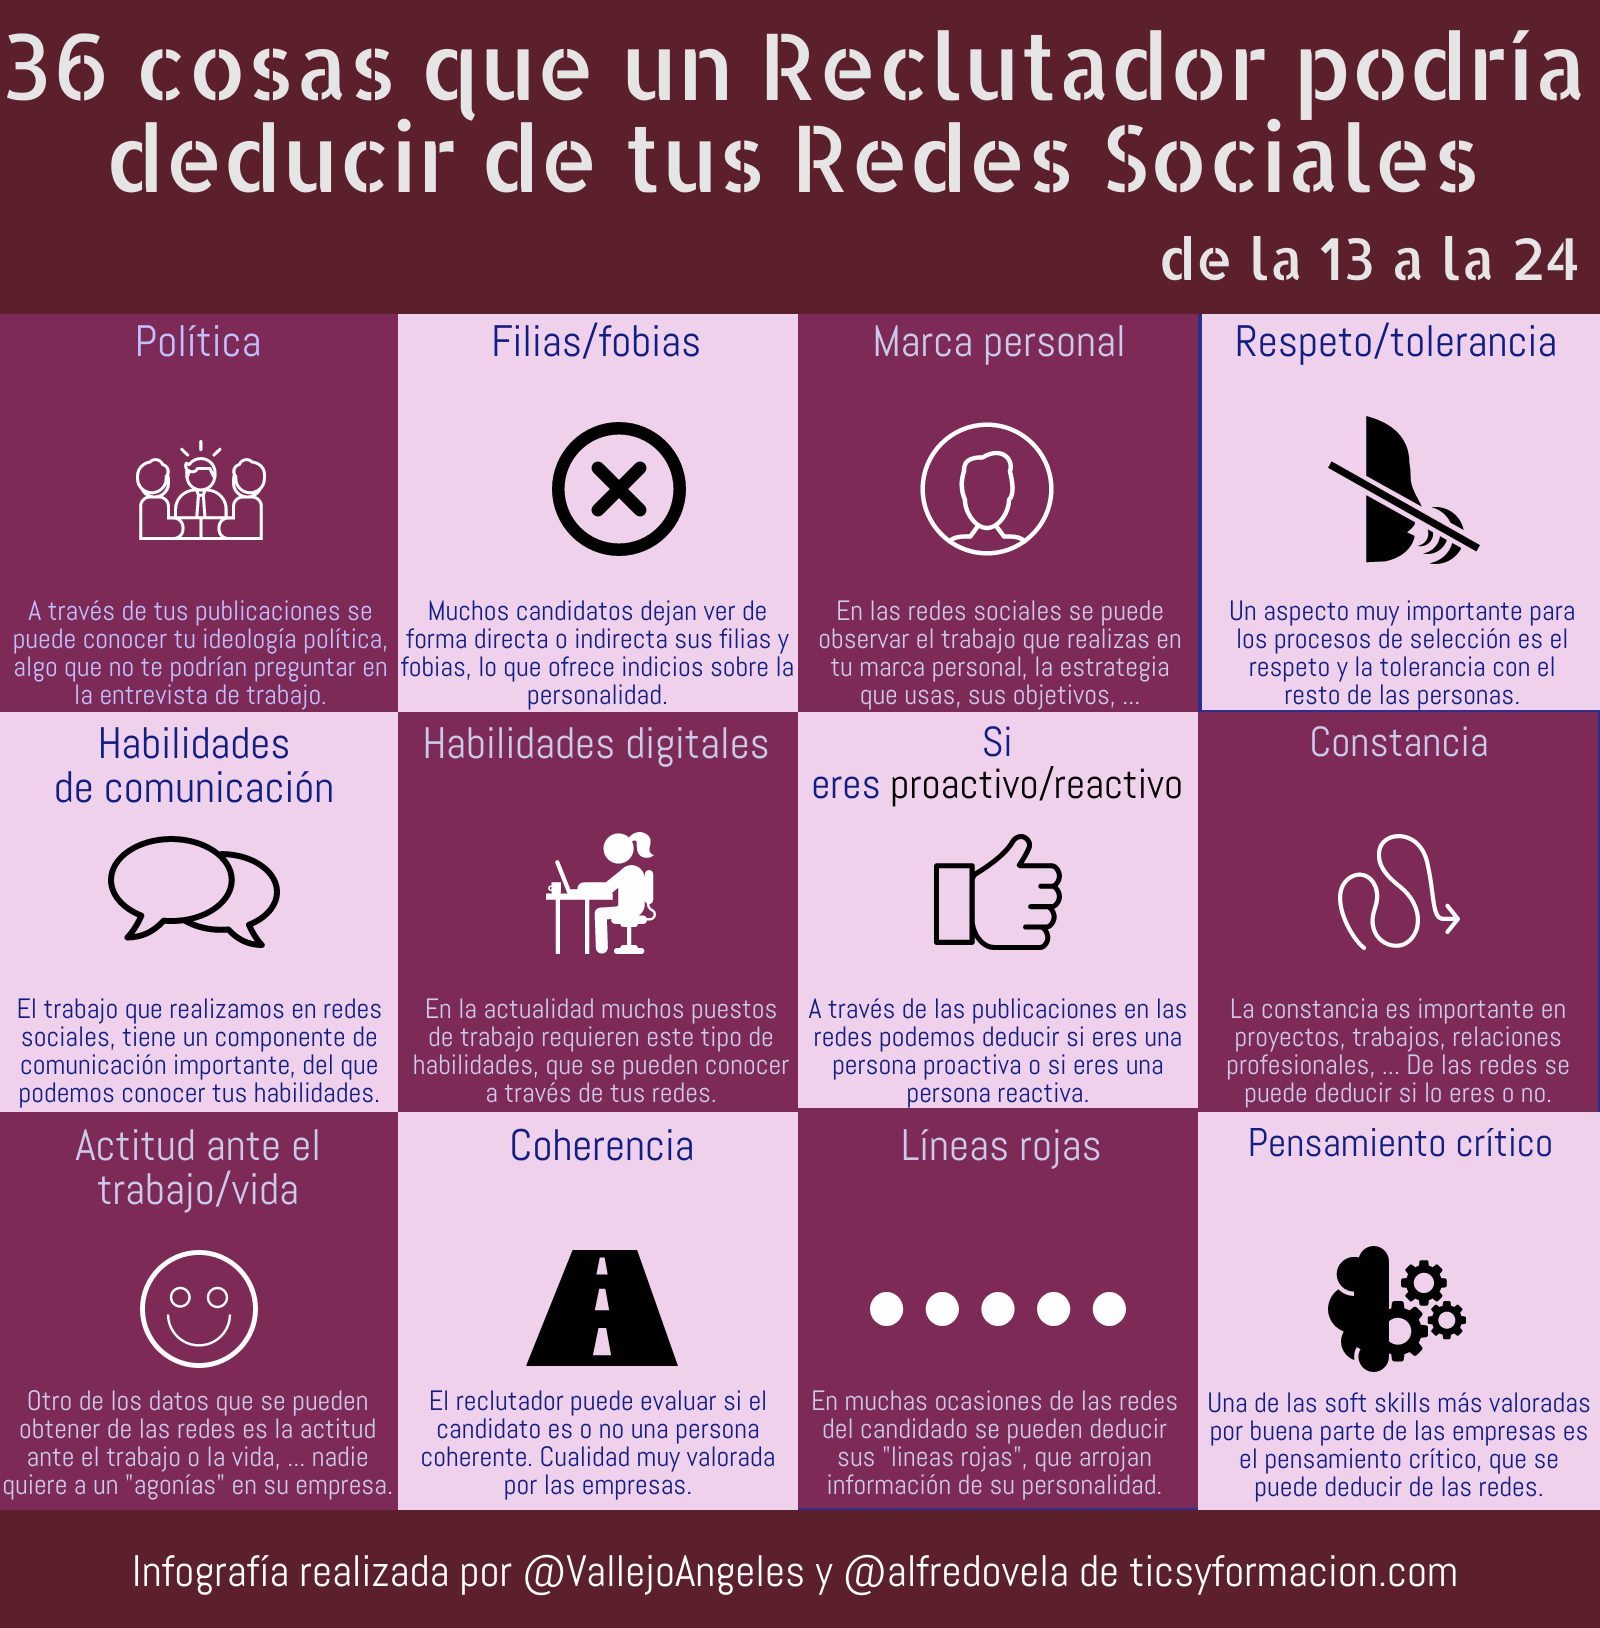 36 cosas que un Reclutador podría deducir de tus Redes Sociales (de la 13 a la 24) #infografia #socialmedia #orientaciónlaboral